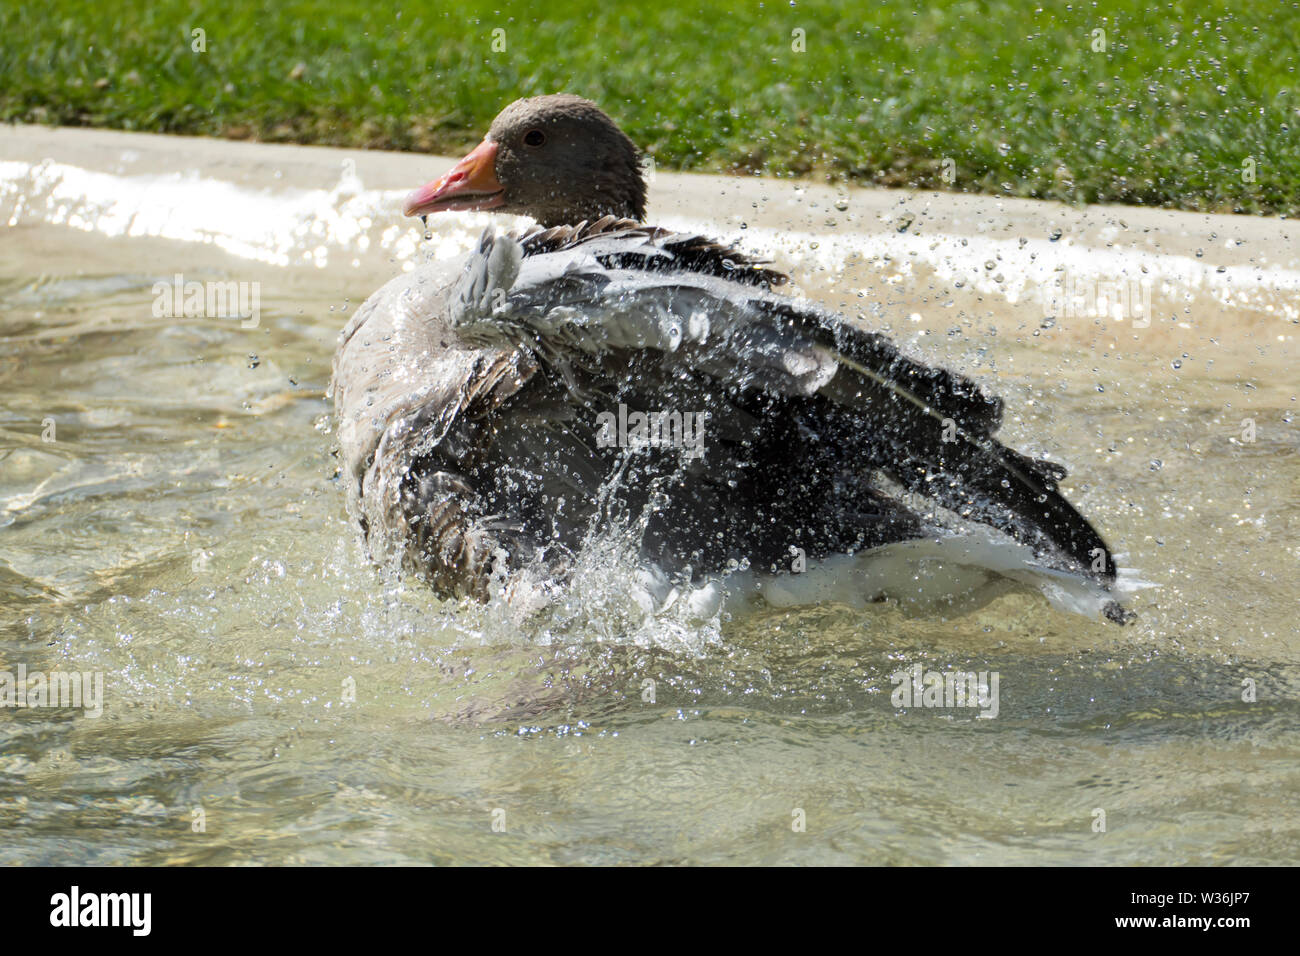 Kanadische Gans, Ente planscht im Wasser und erfrischt sich bei der großen Hitze Stock Photo